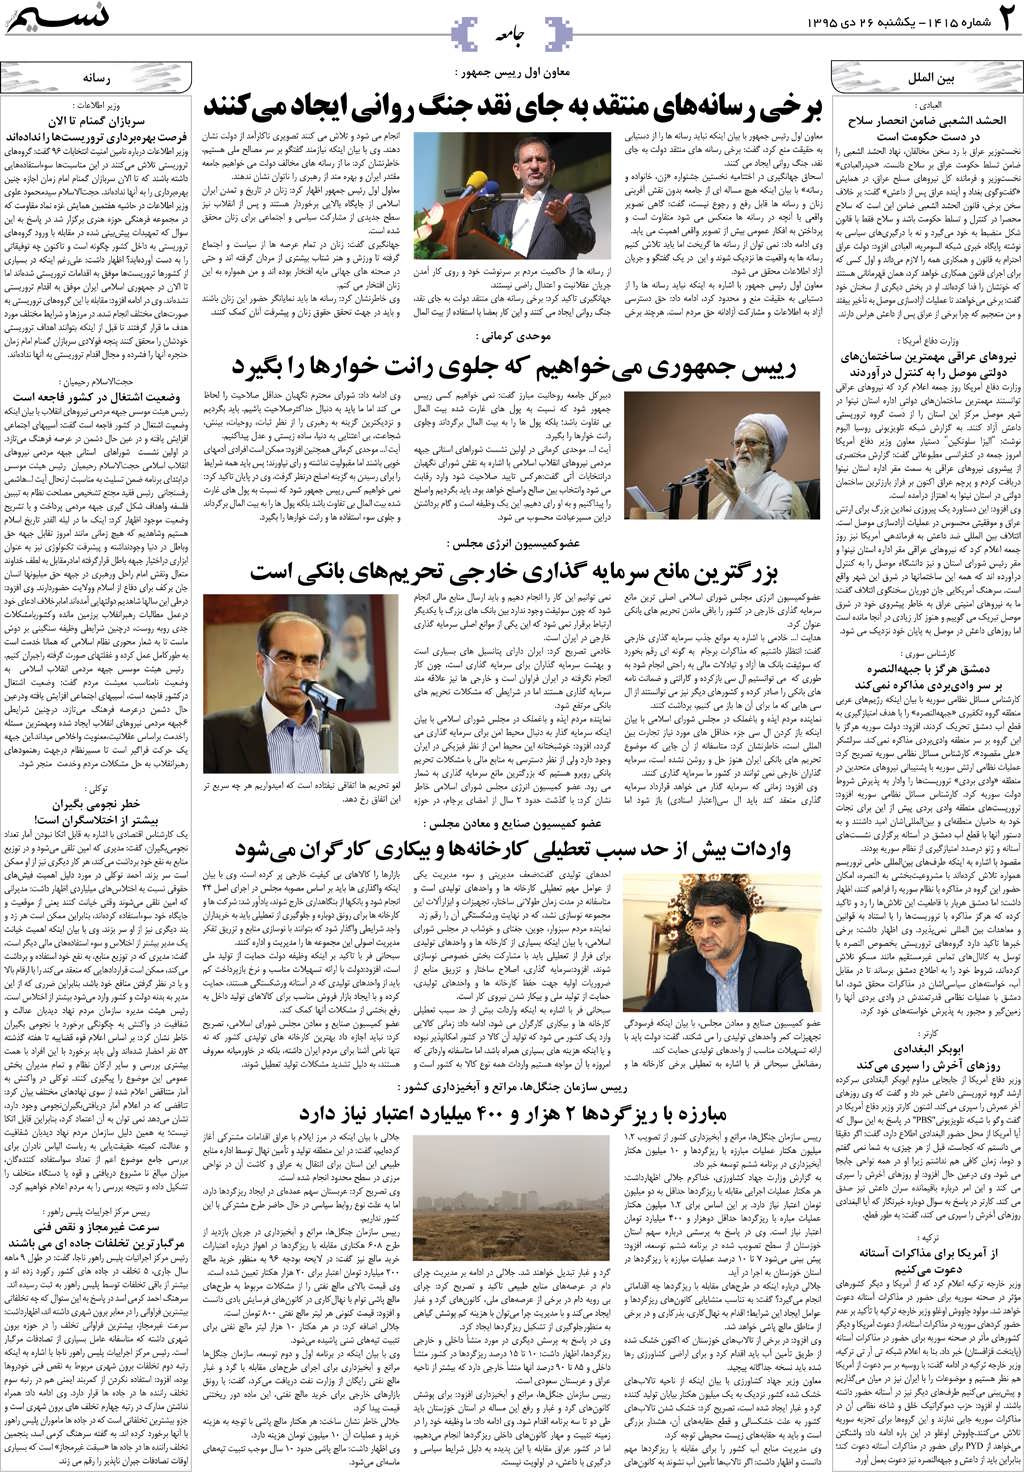 صفحه جامعه روزنامه نسیم شماره 1415